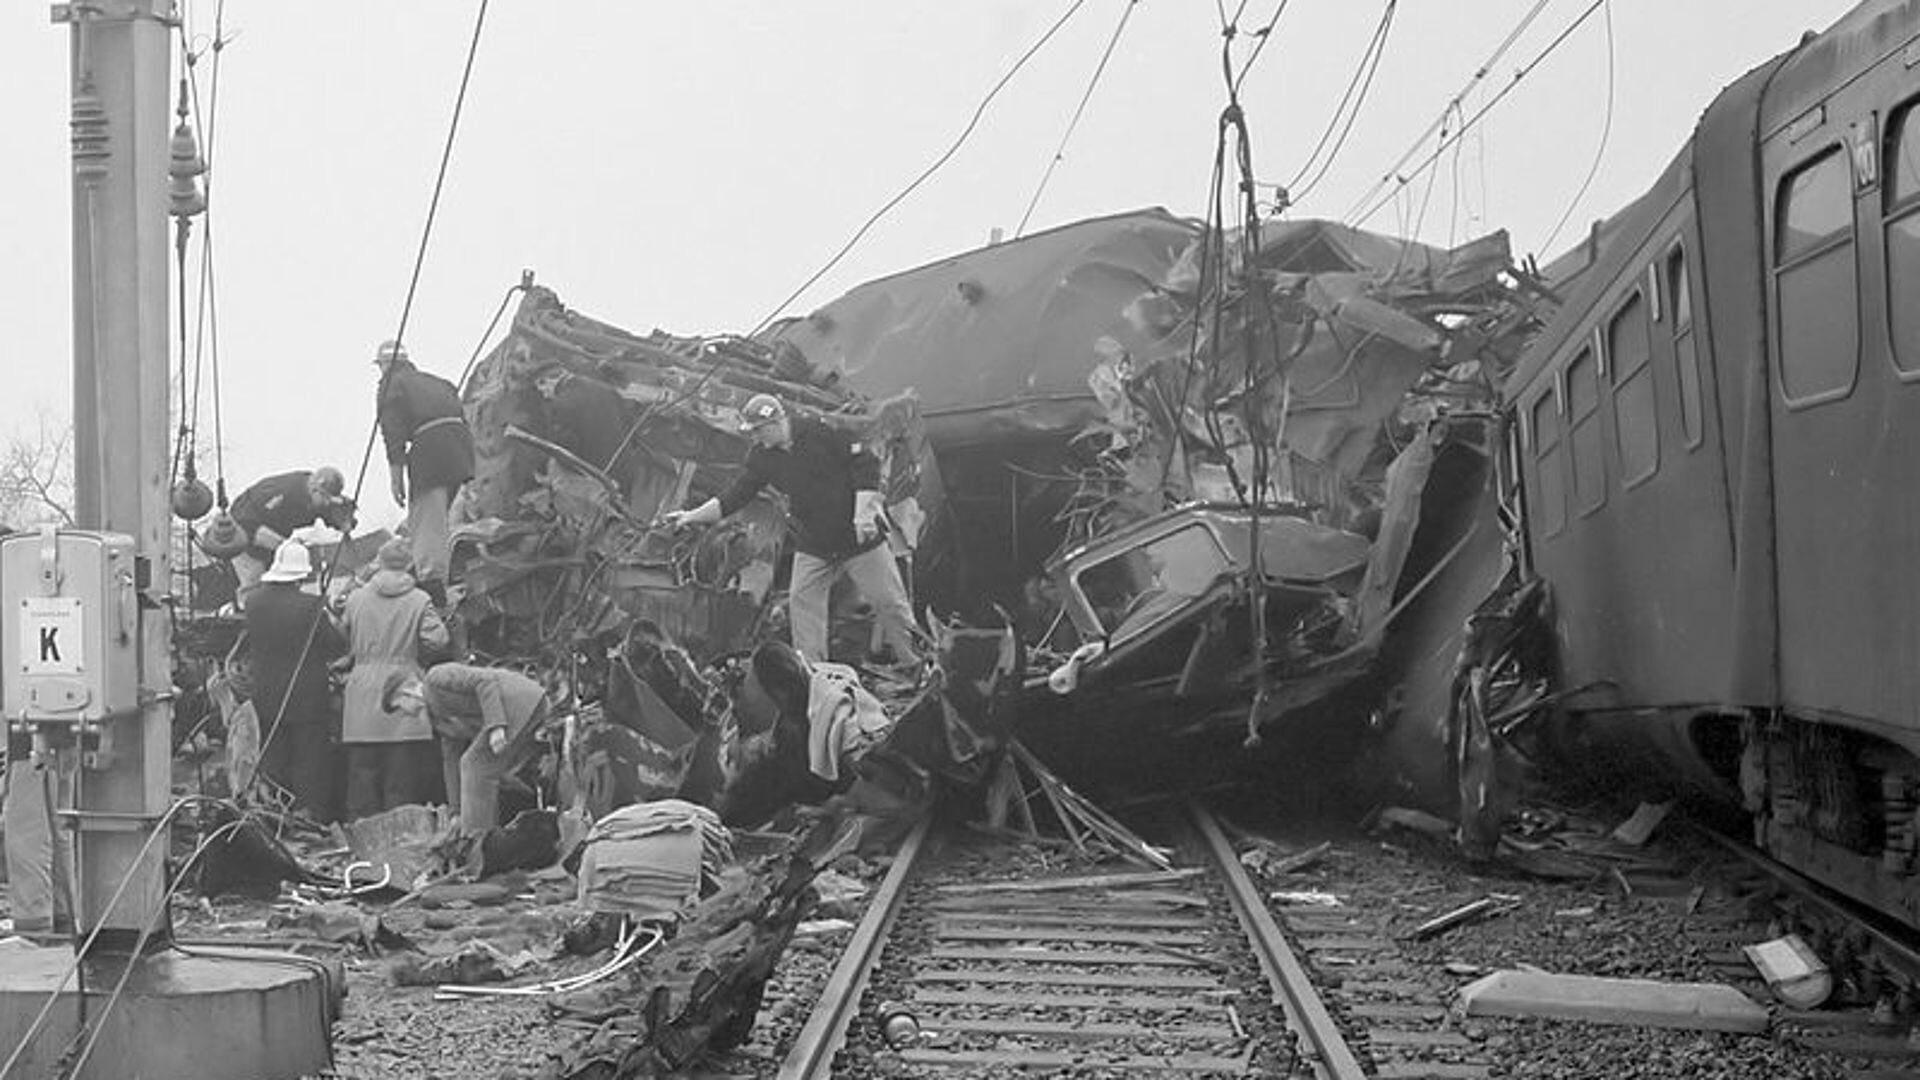 De ravage na de botsing van twee treinen bij Harmelen in januari 1962.